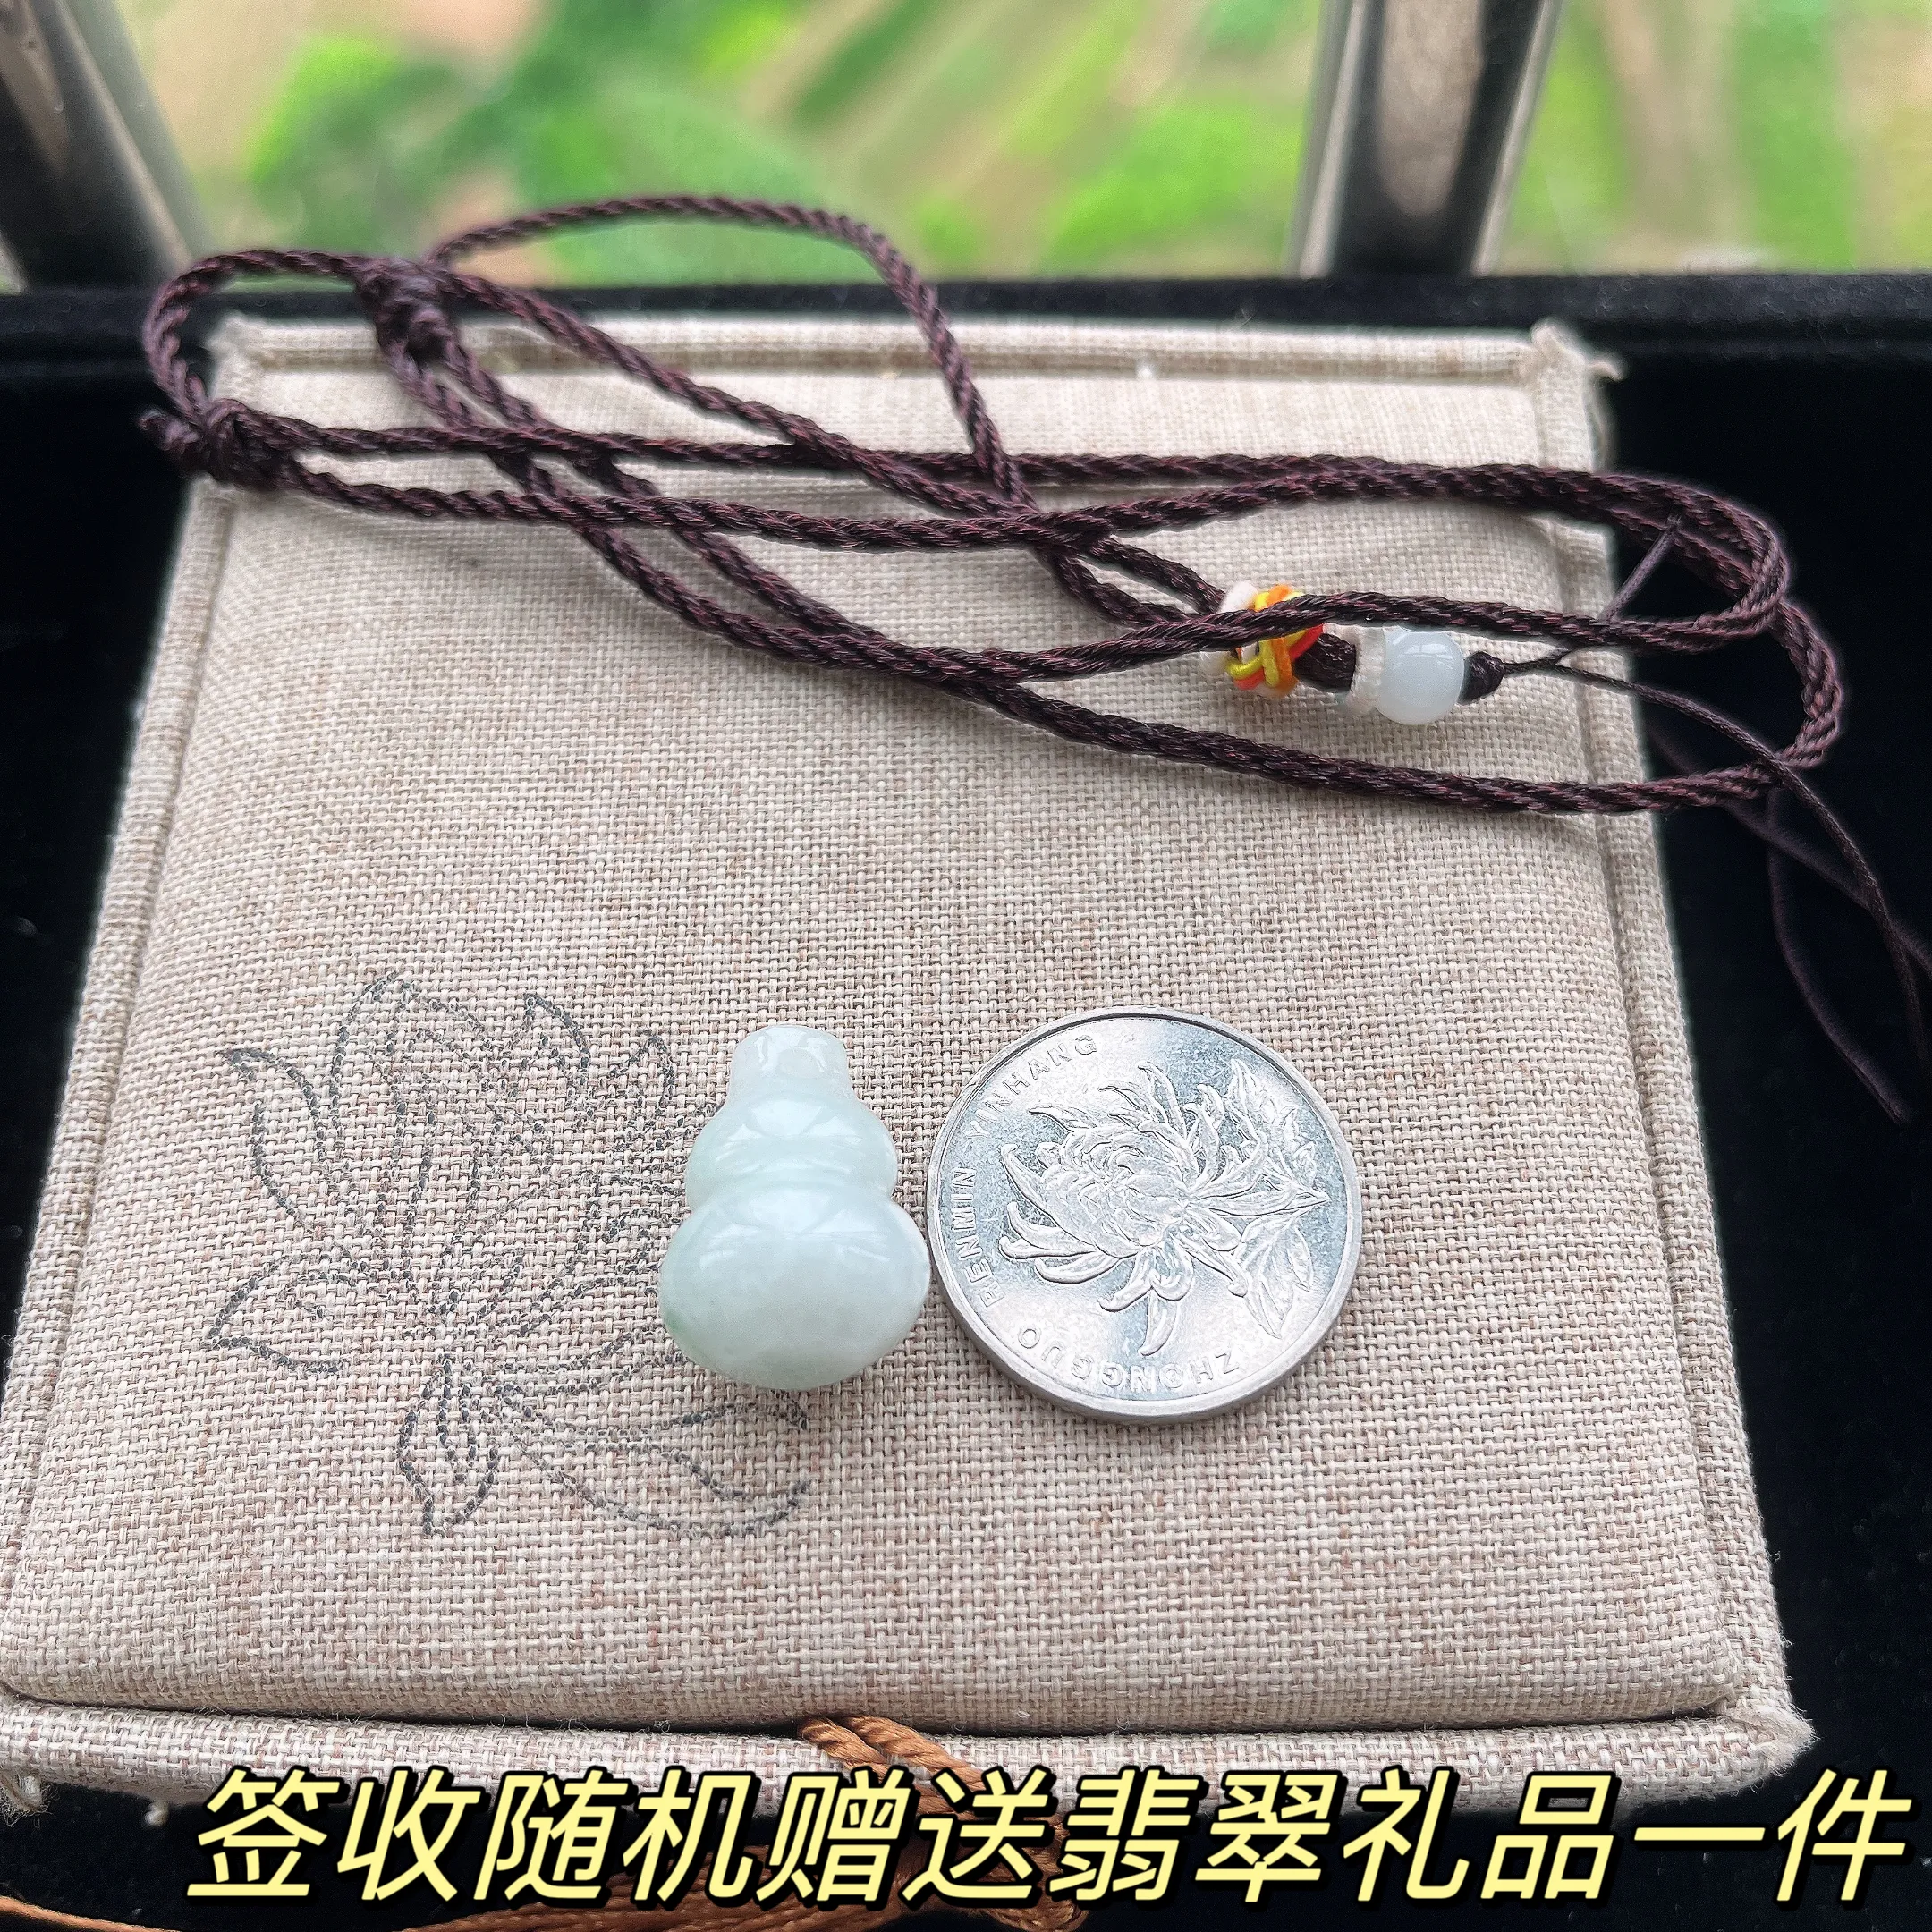 天然A货翡翠k金紫罗兰蛋面手链，尺寸 6-5.3，重量: 4.37g
5月6日